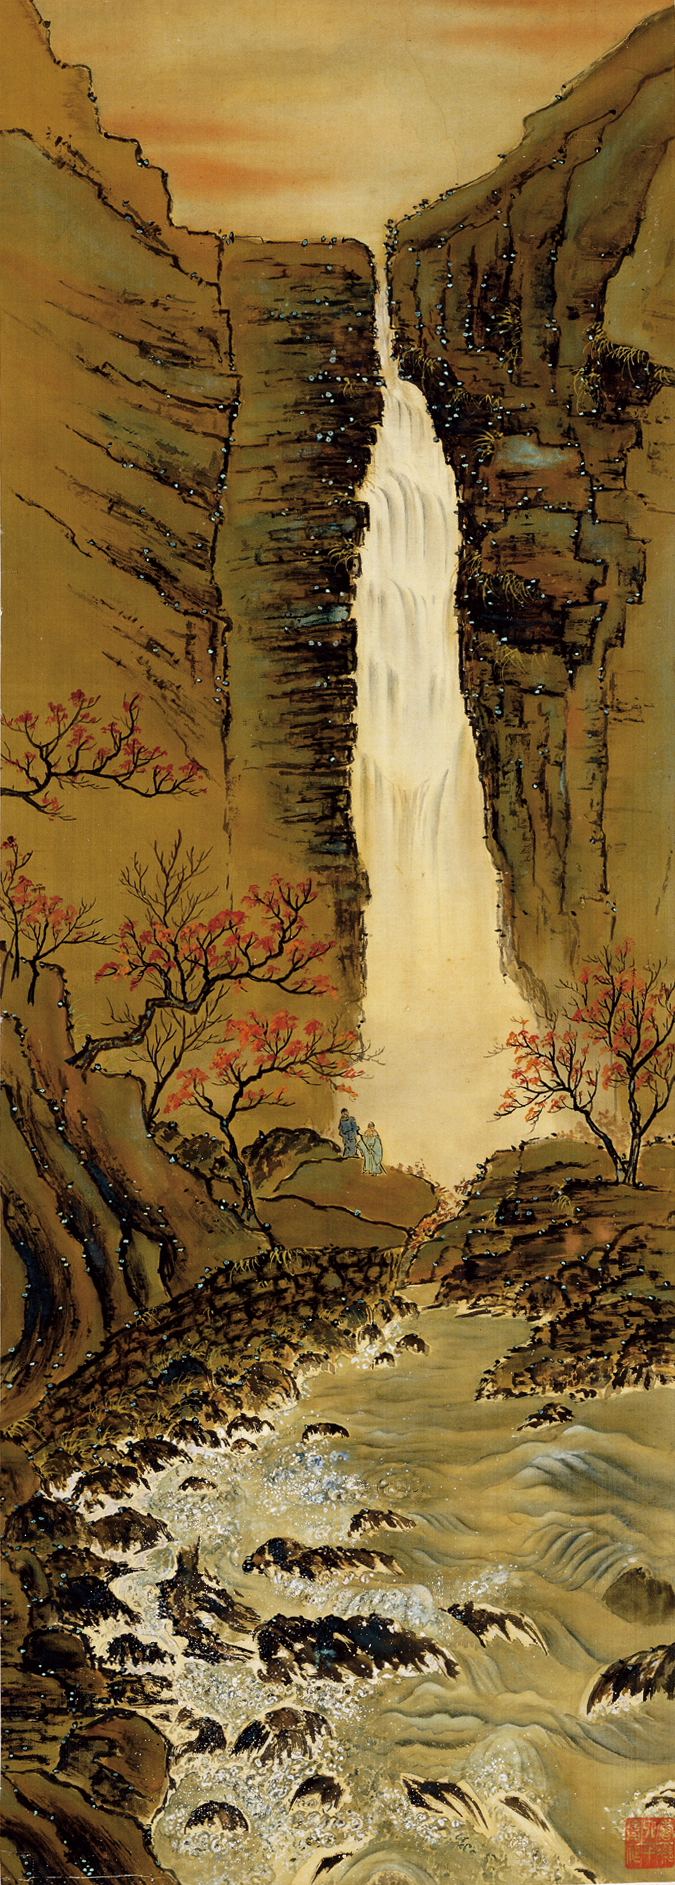 山谷瀑布 何香凝 1920年代 110×39cm 设色绢本 何香凝美术馆藏.jpg.jpg